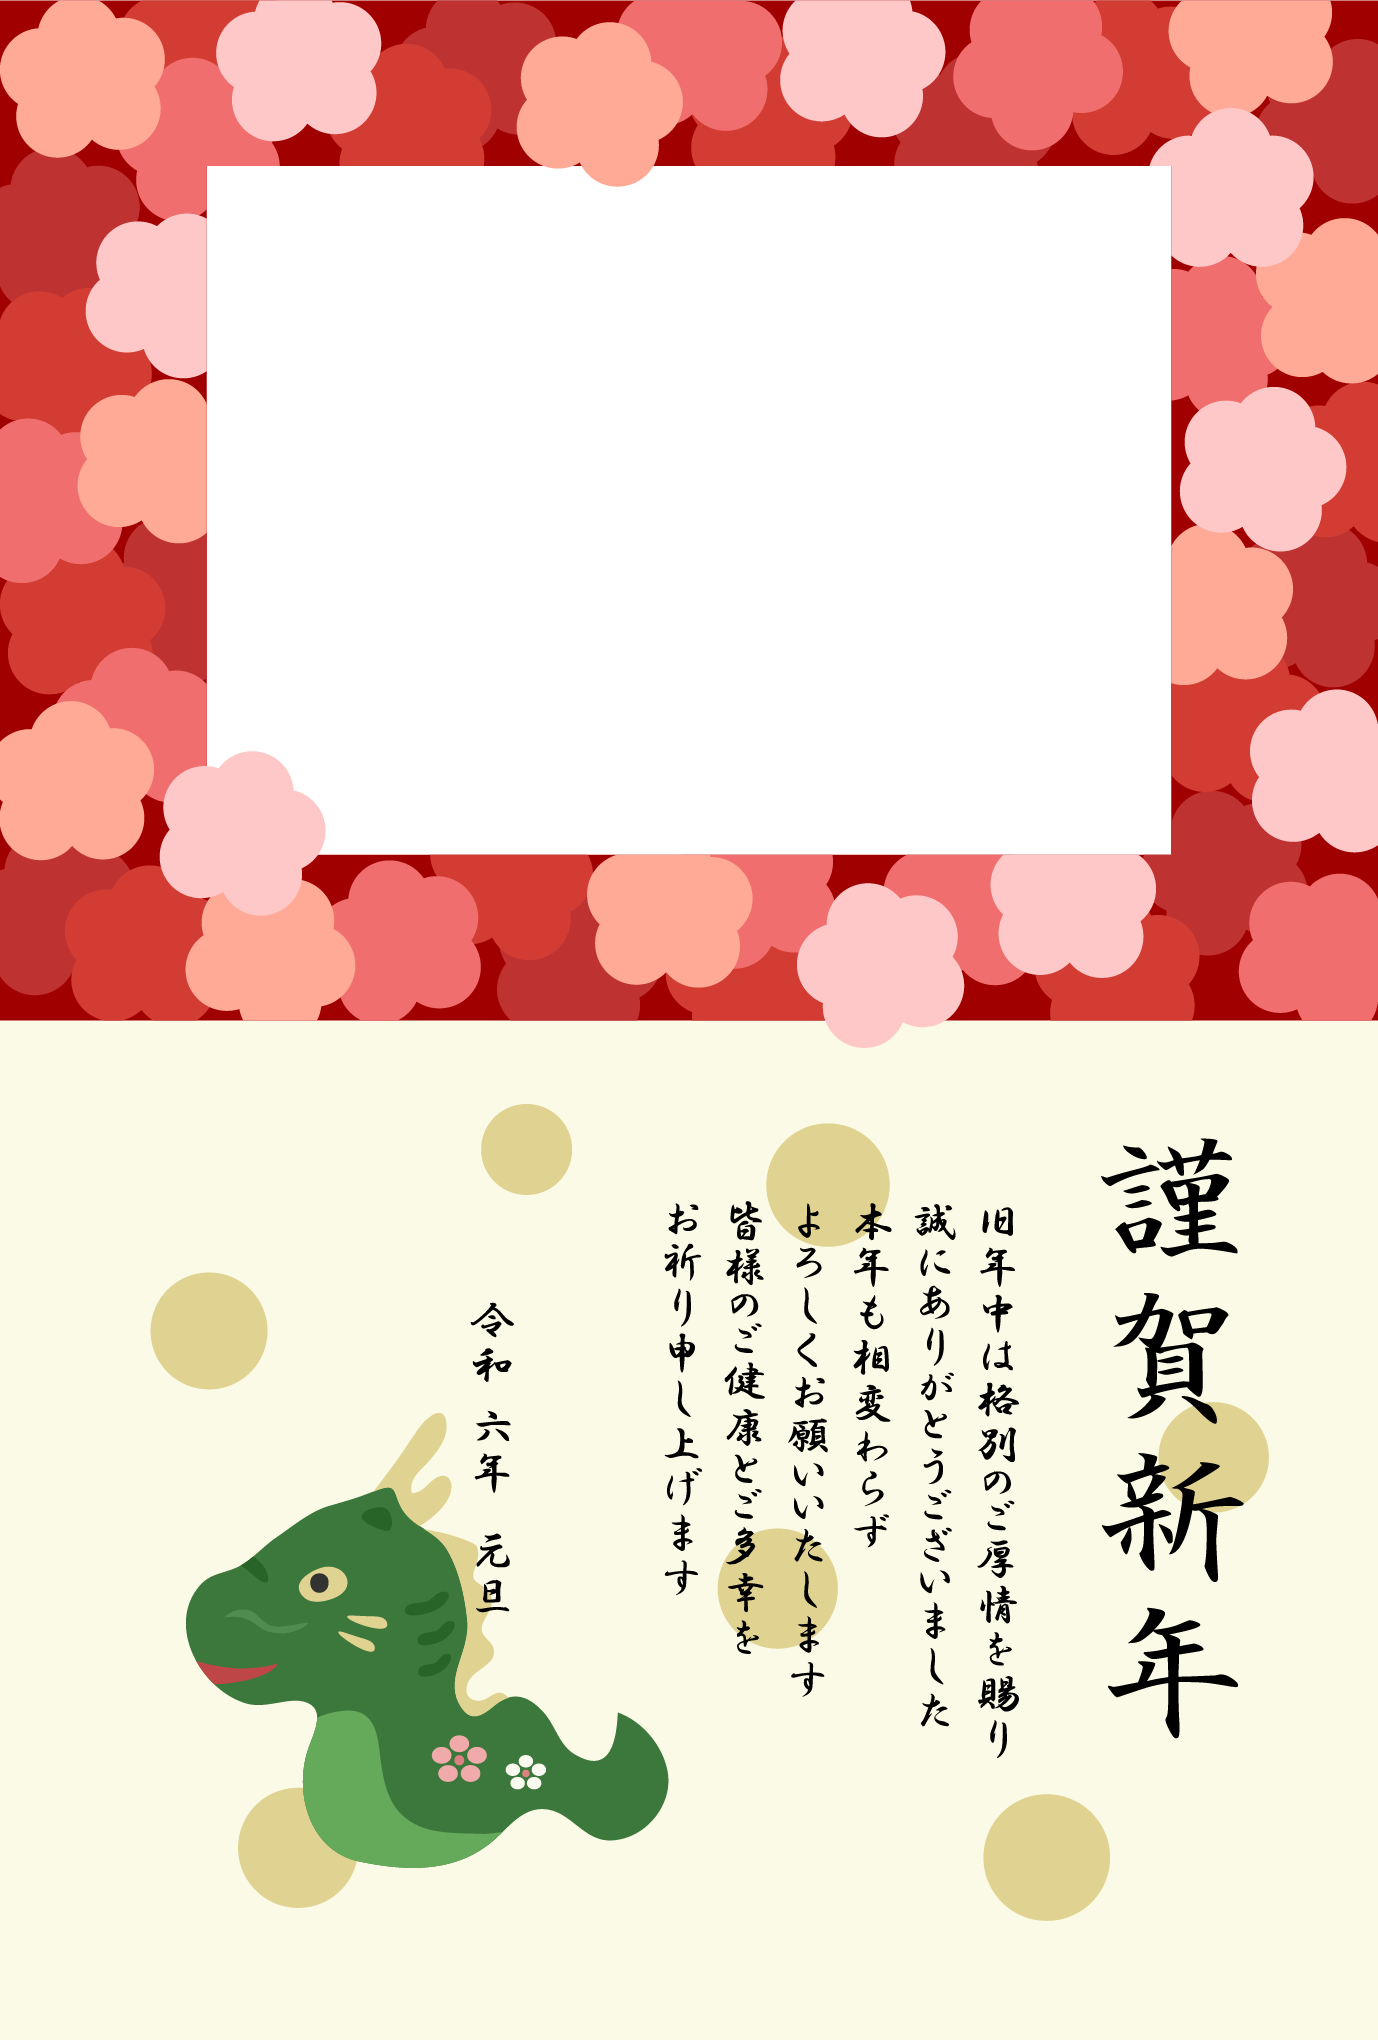 【写真フレーム】かわいい龍と梅のフレームの年賀状テンプレート